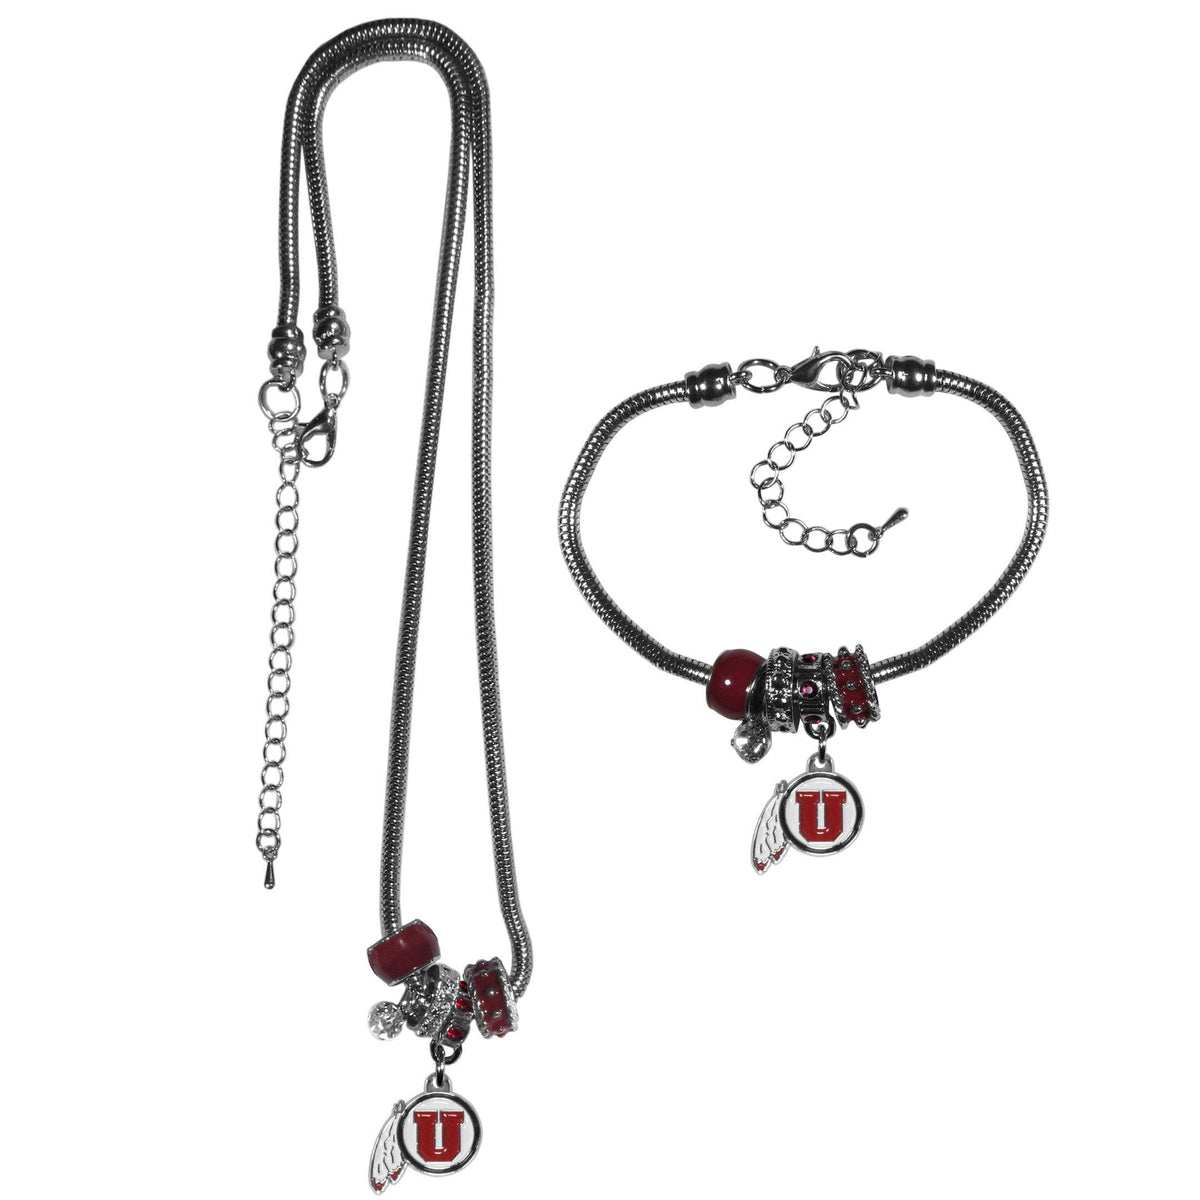 Utah Utes Euro Bead Necklace and Bracelet Set - Flyclothing LLC